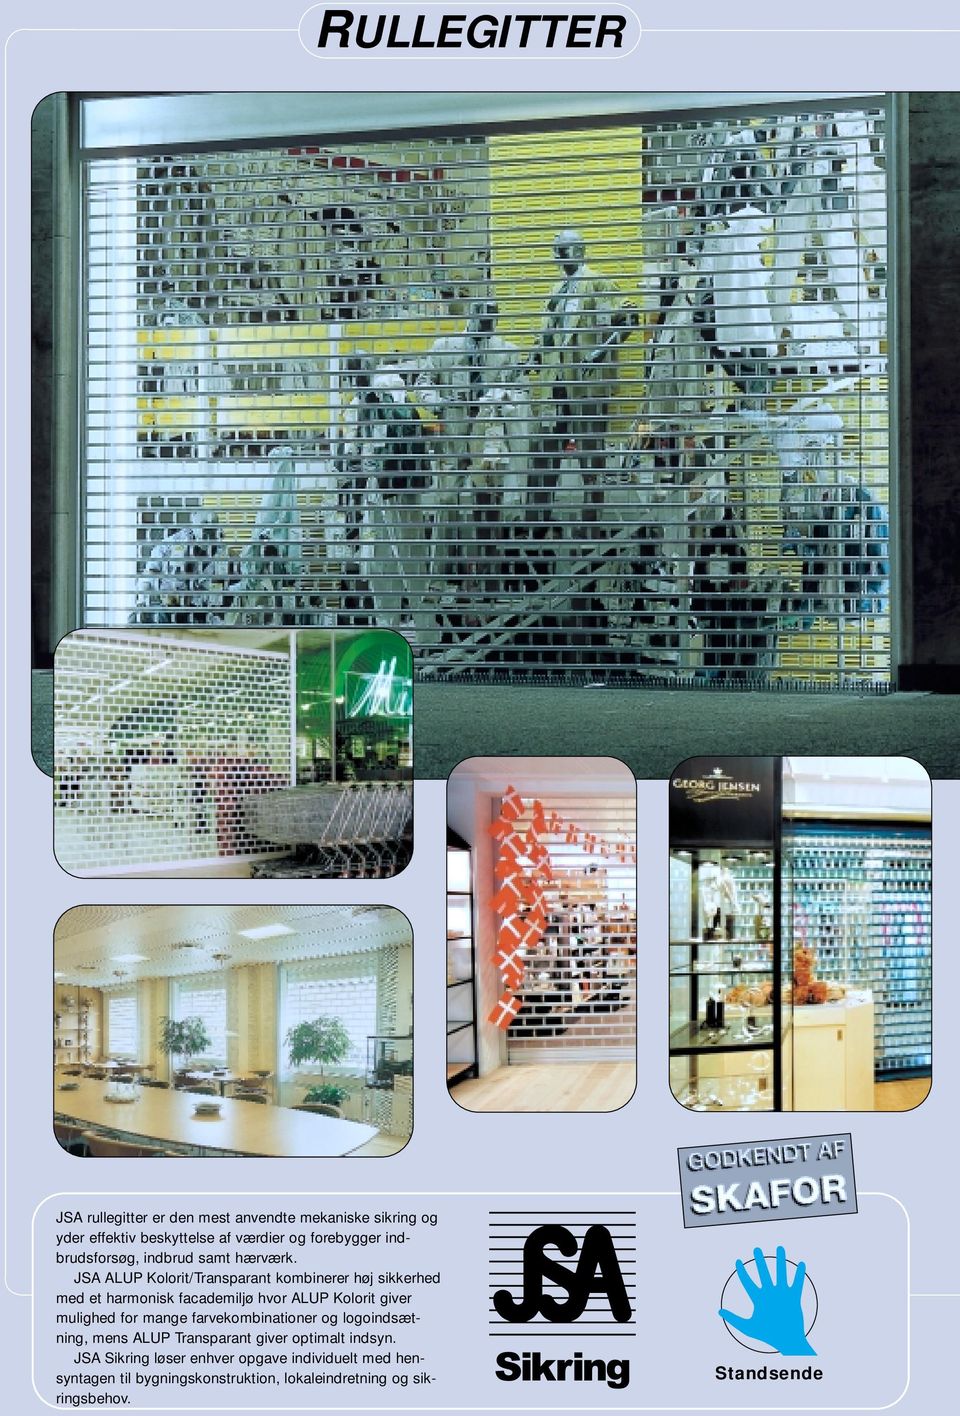 JSA ALUP Kolorit/Transparant kombinerer høj sikkerhed med et harmonisk facademiljø hvor ALUP Kolorit giver mulighed for